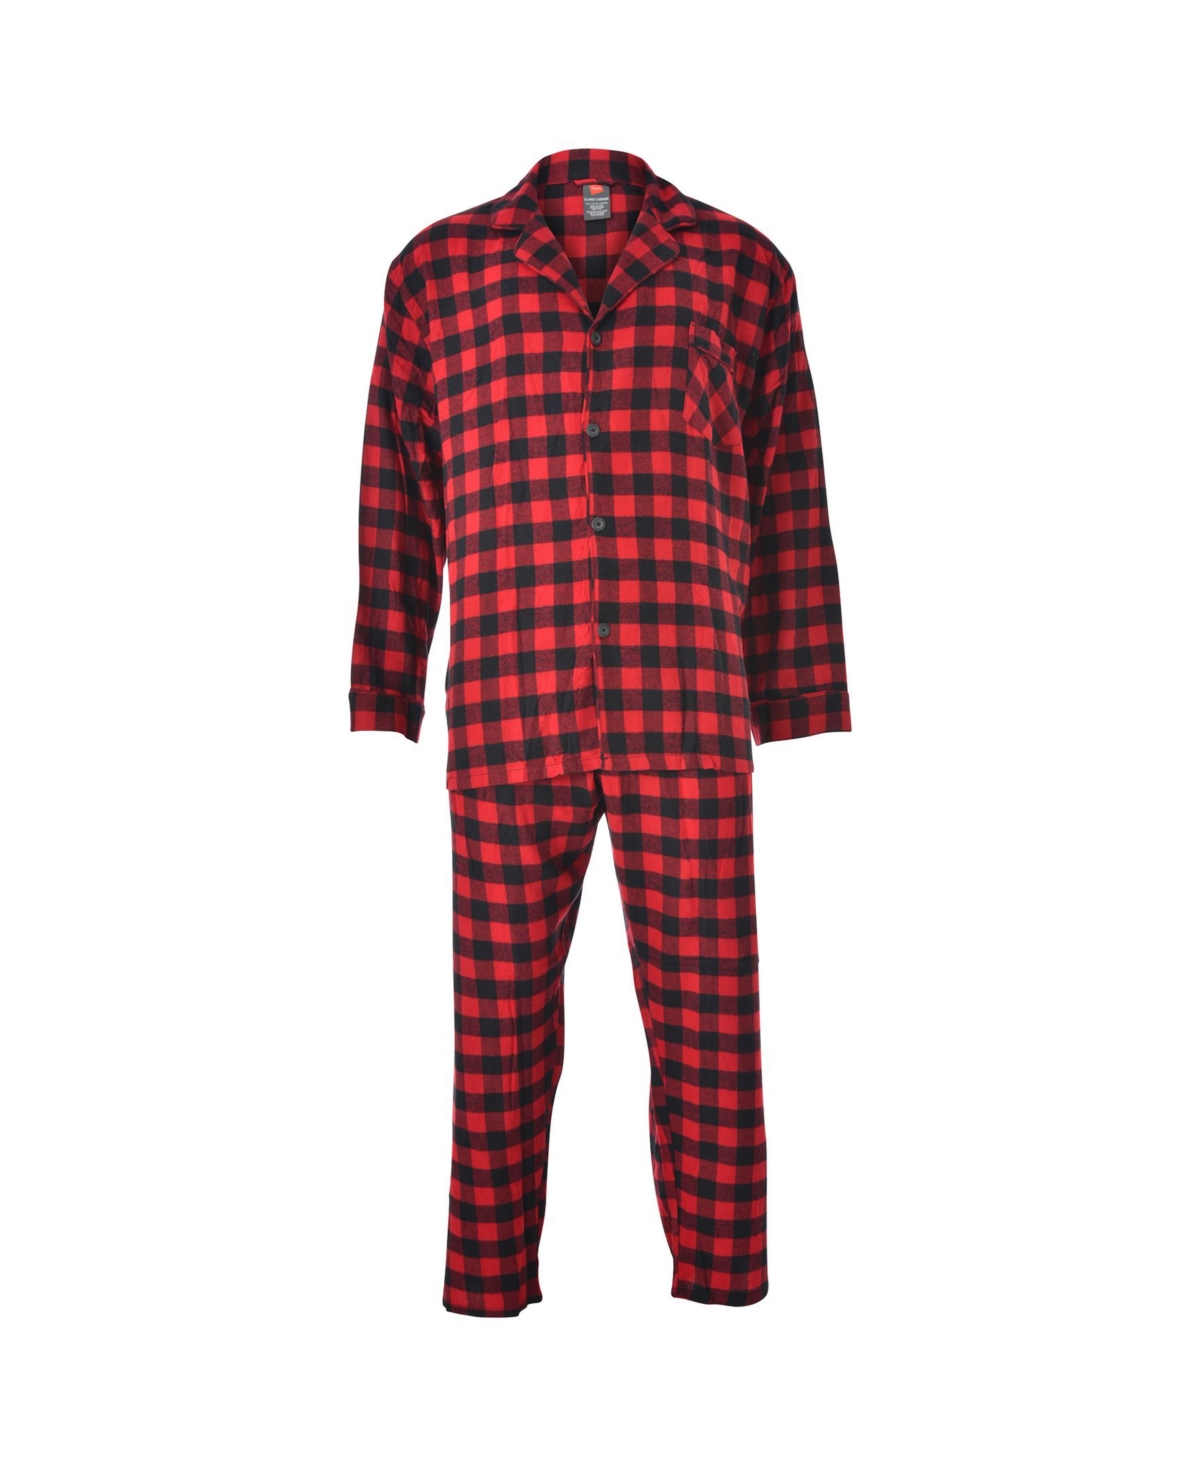 Hanes Men's Big and Tall Flannel Plaid Pajama Set - Red Black Check Plaid